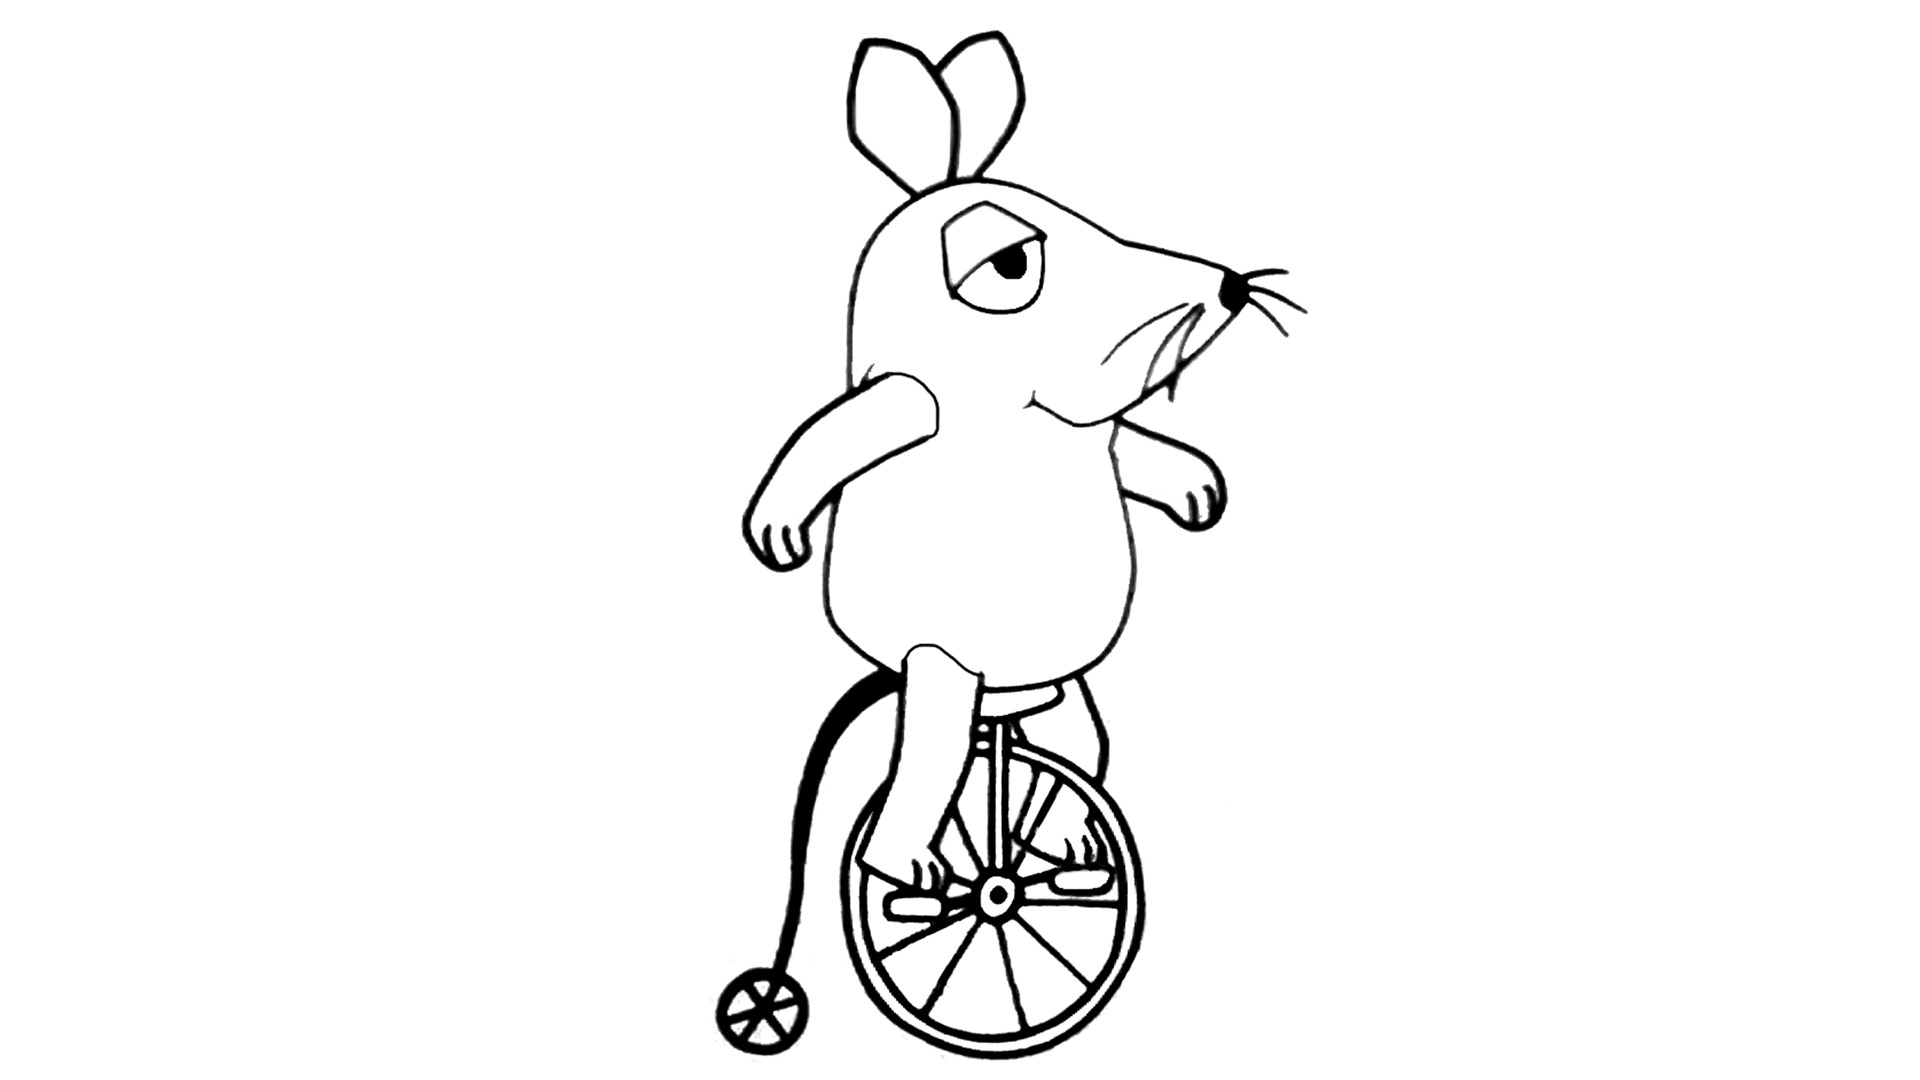 Fahrrad - Die Seite Mit Der Maus - Wdr für Die Sendung Mit Der Maus Ausmalbilder